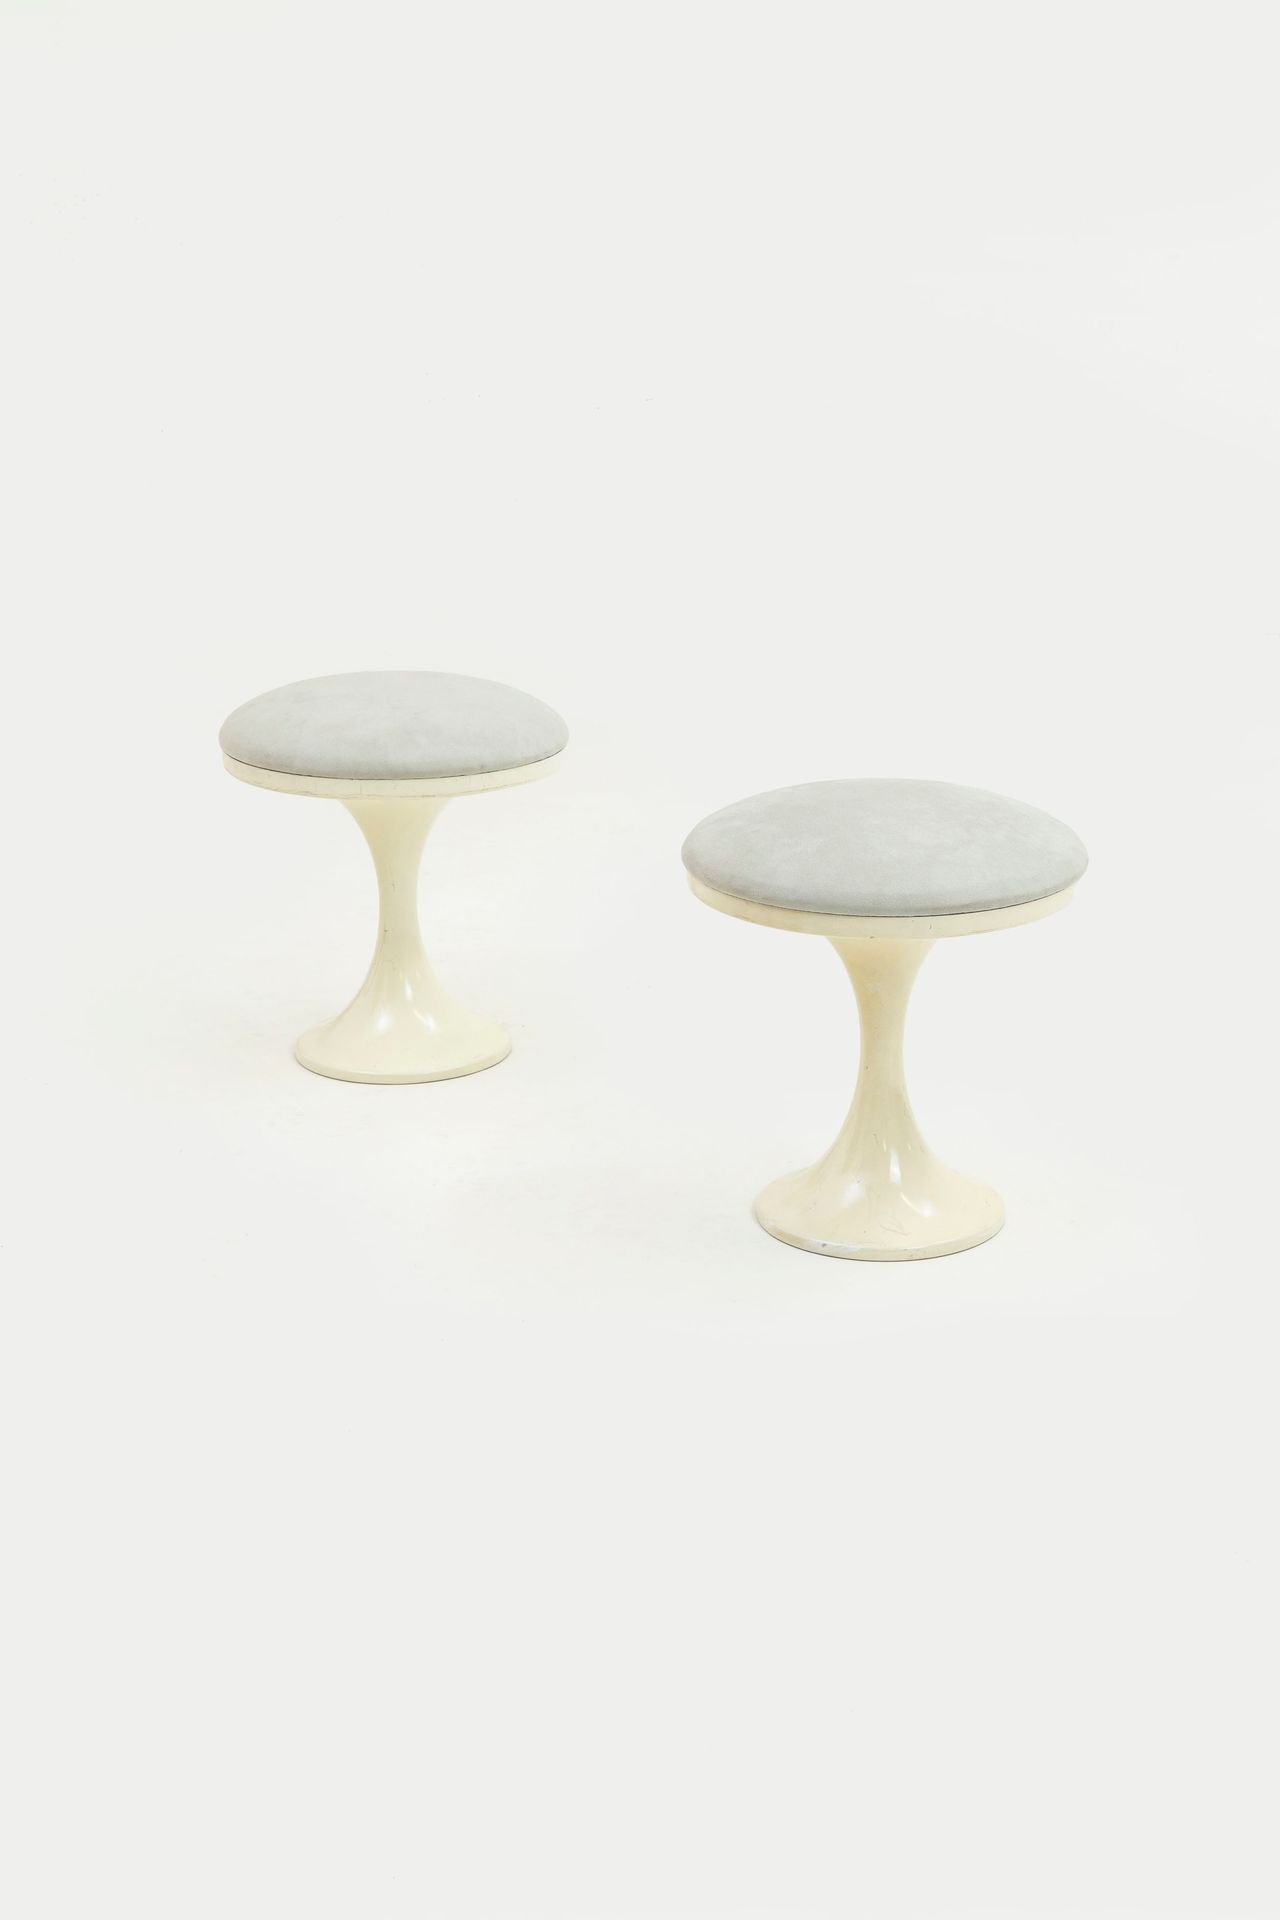 MANIFATTURA ITALIANA 两个凳子。搪瓷压铸铝，软垫织物。1960s.
Cm 43x40x40 
一对意大利凳子



状况良好，有小的线条和磨&hellip;